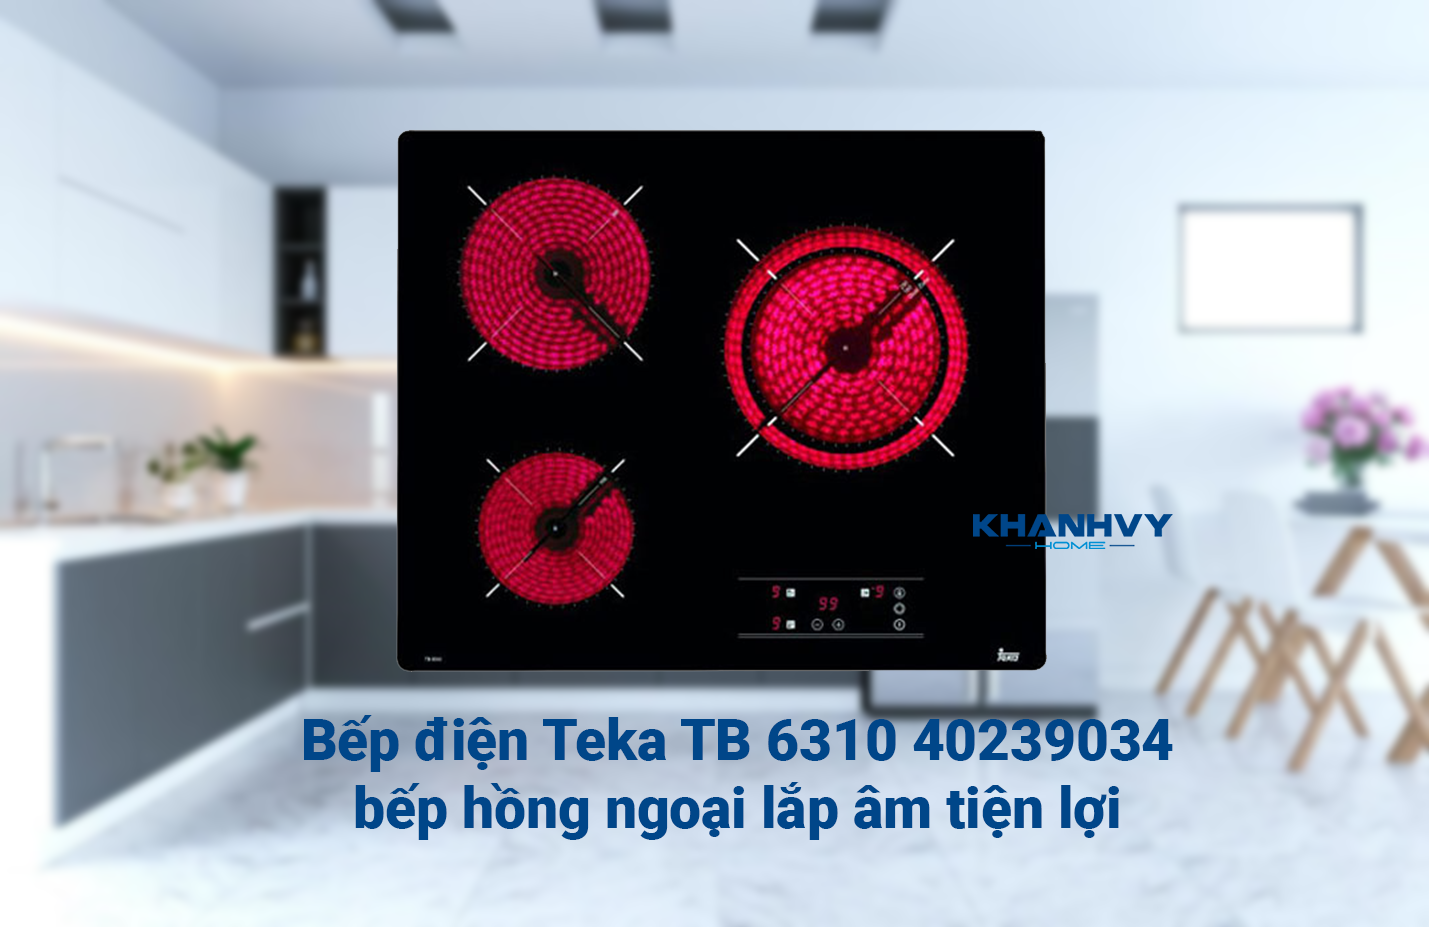 Bếp điện Teka TB 6310 40239034 – bếp hồng ngoại lắp âm tiện lợi